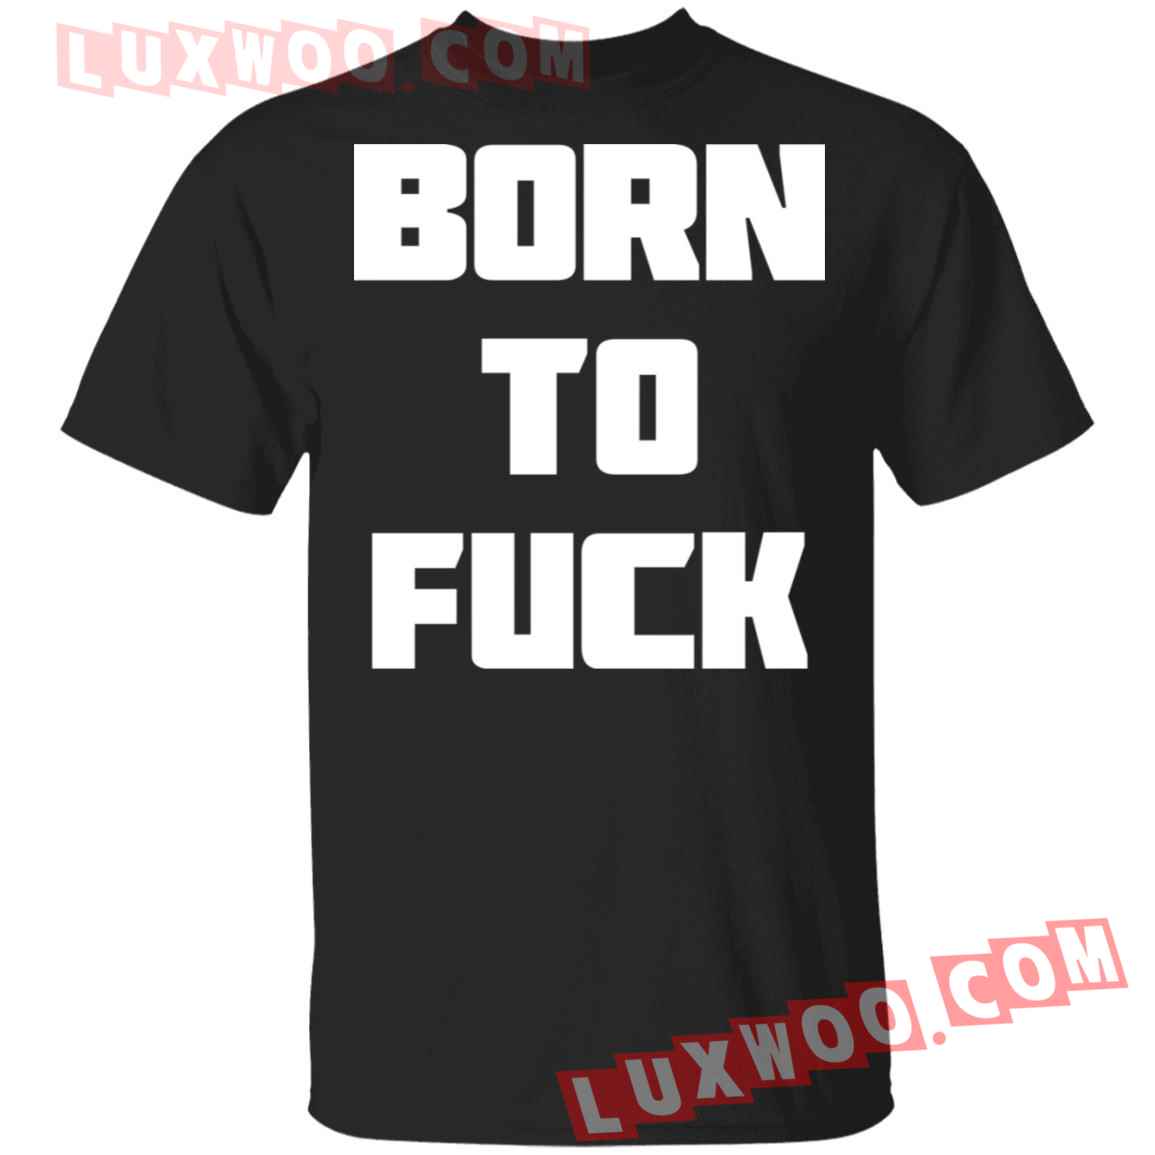 Born To Fck Shirt